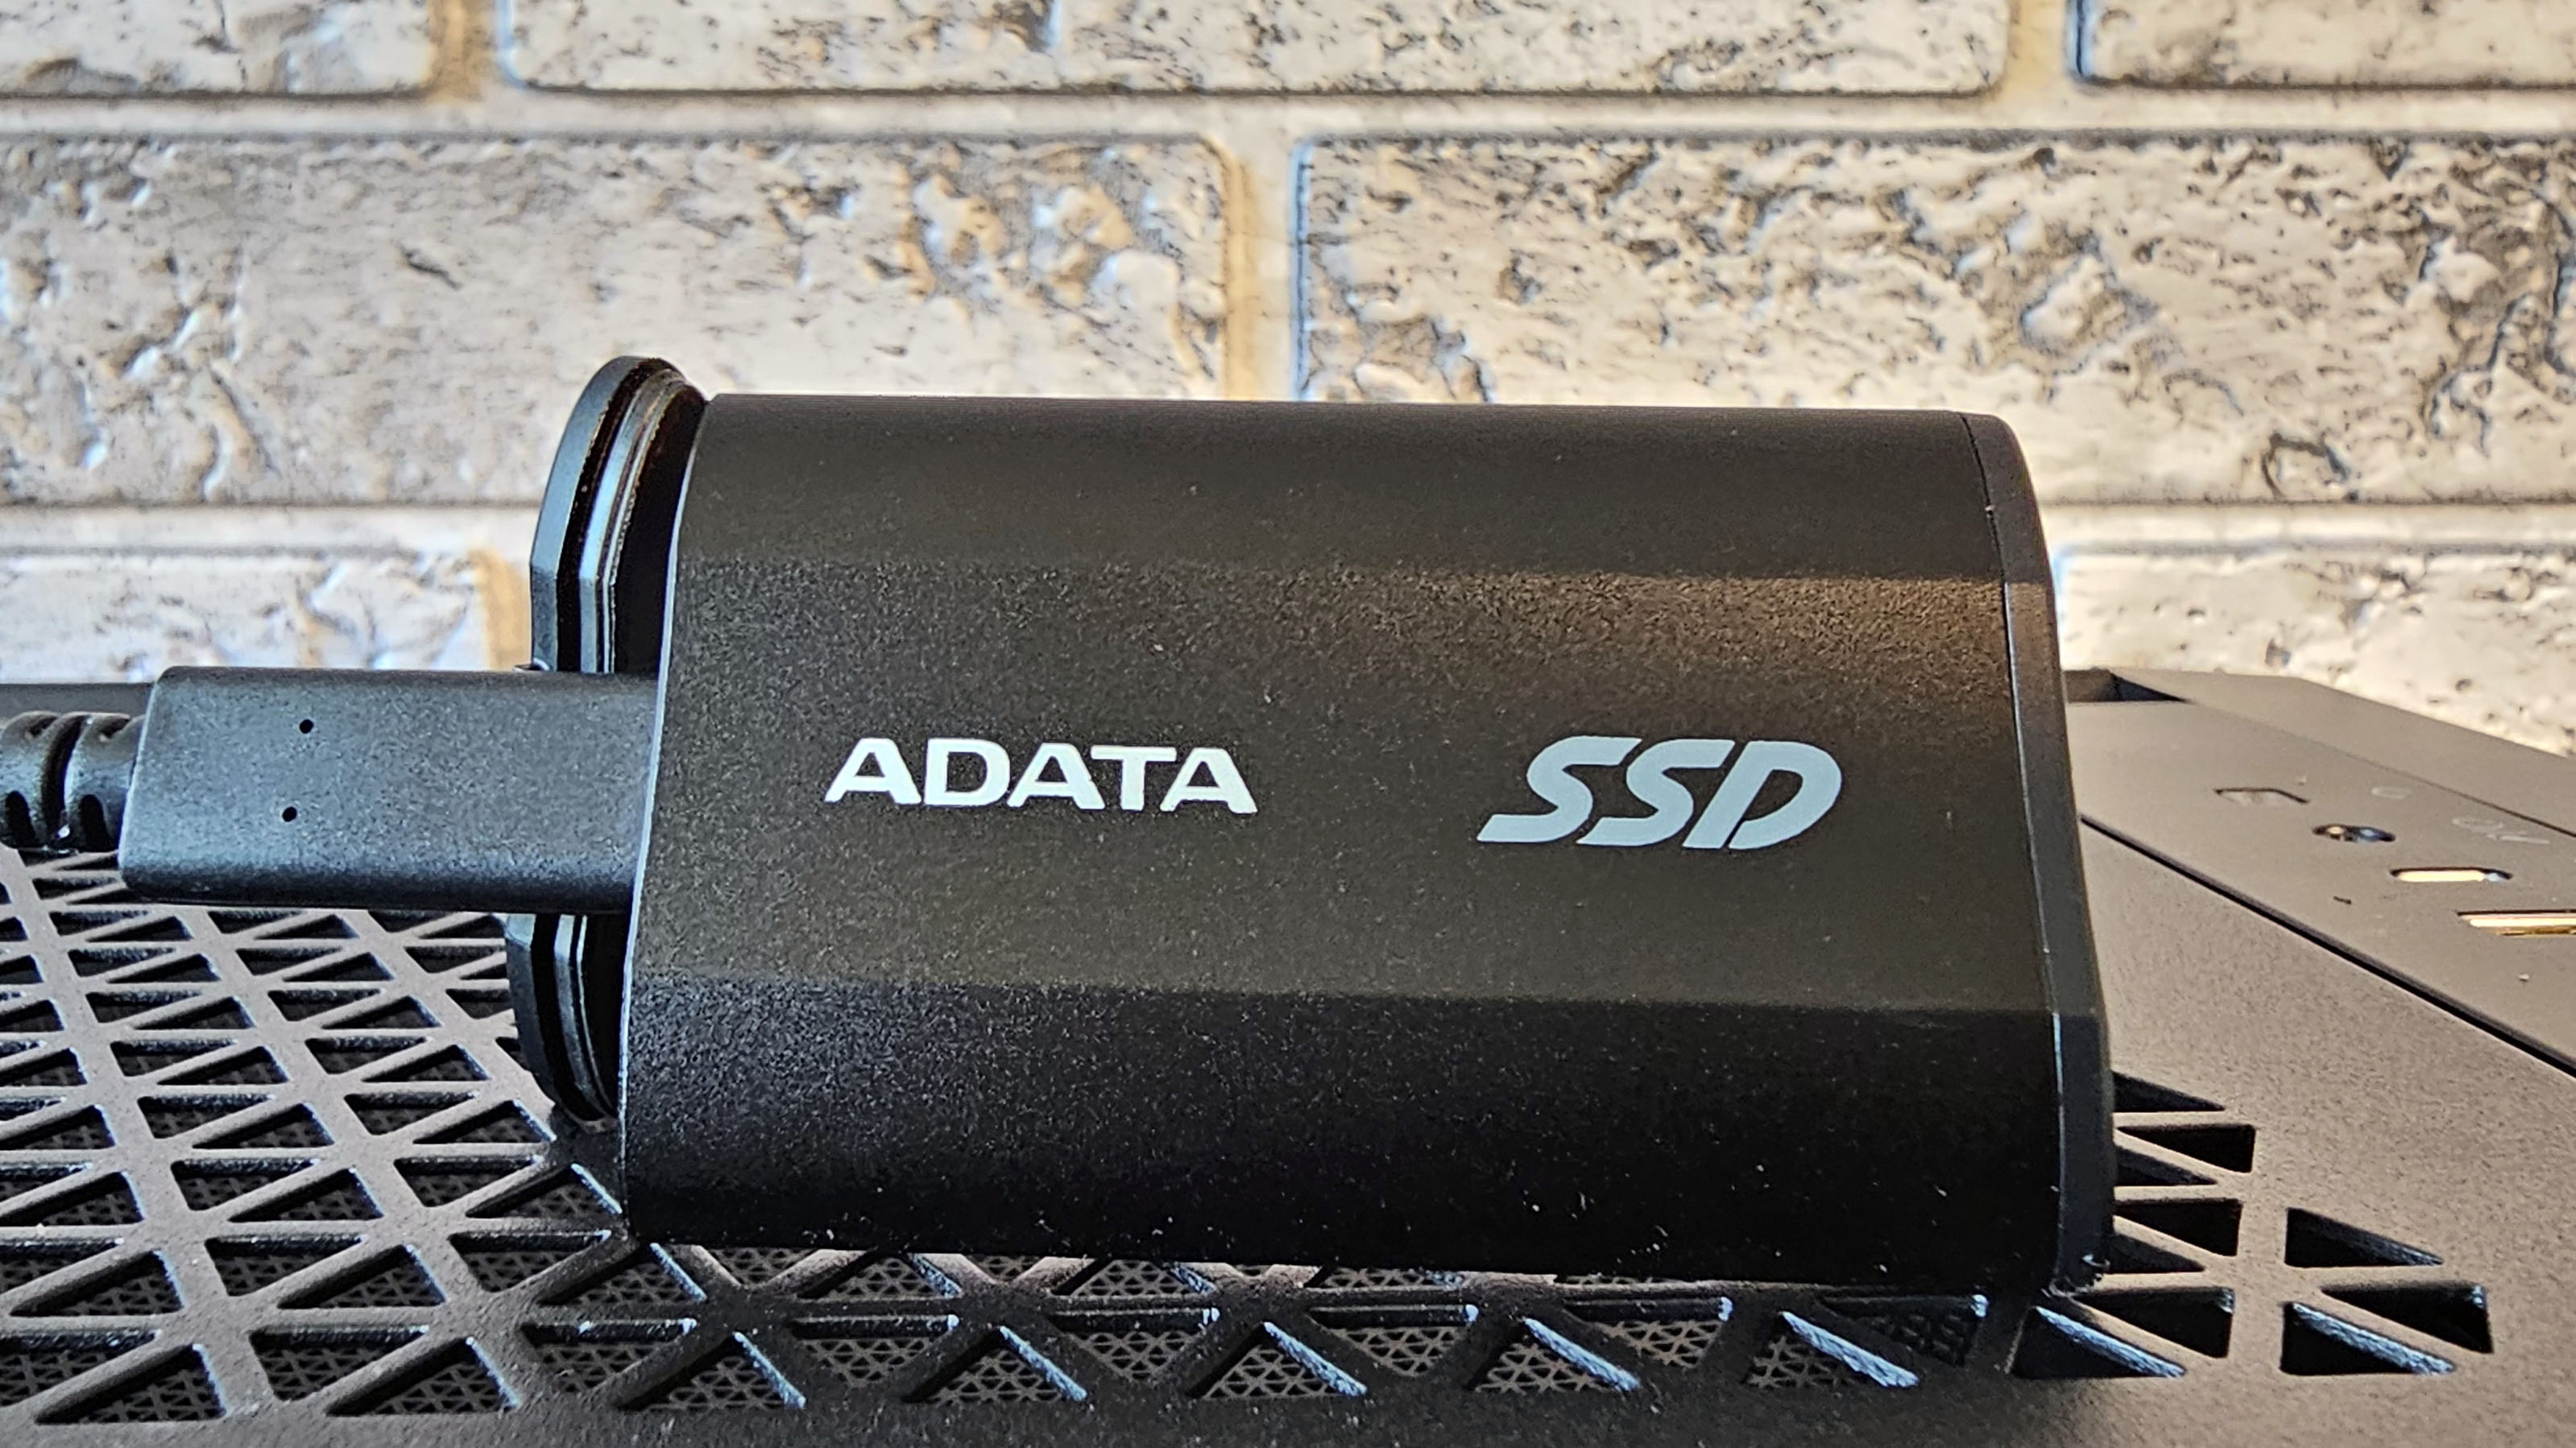 Adata SD810 External SSD